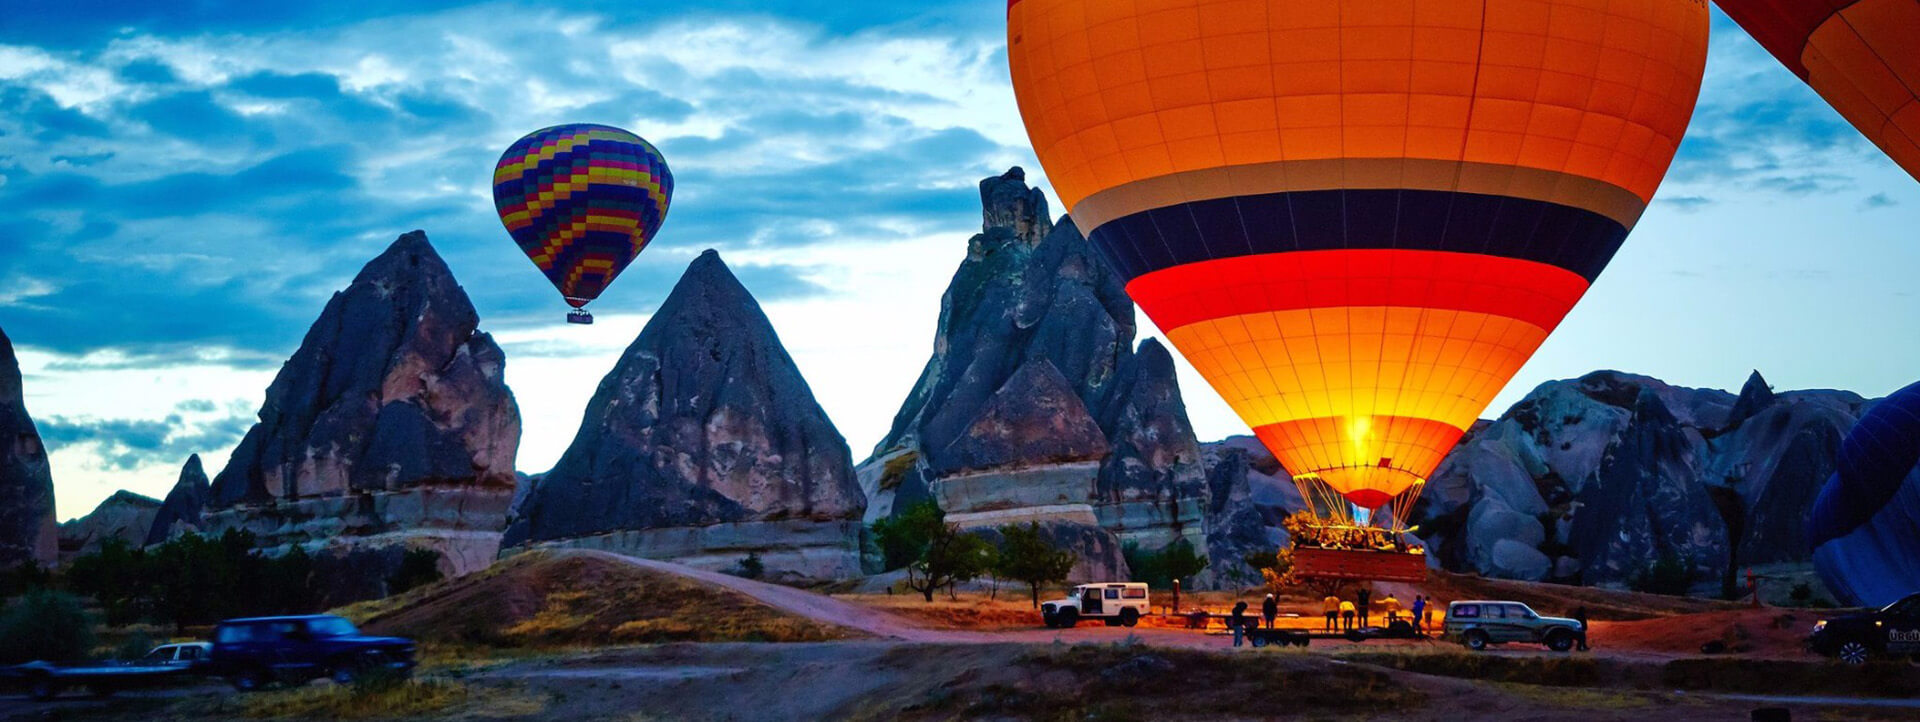 831_Hot_Air_Balloon_Cappadocia_resize